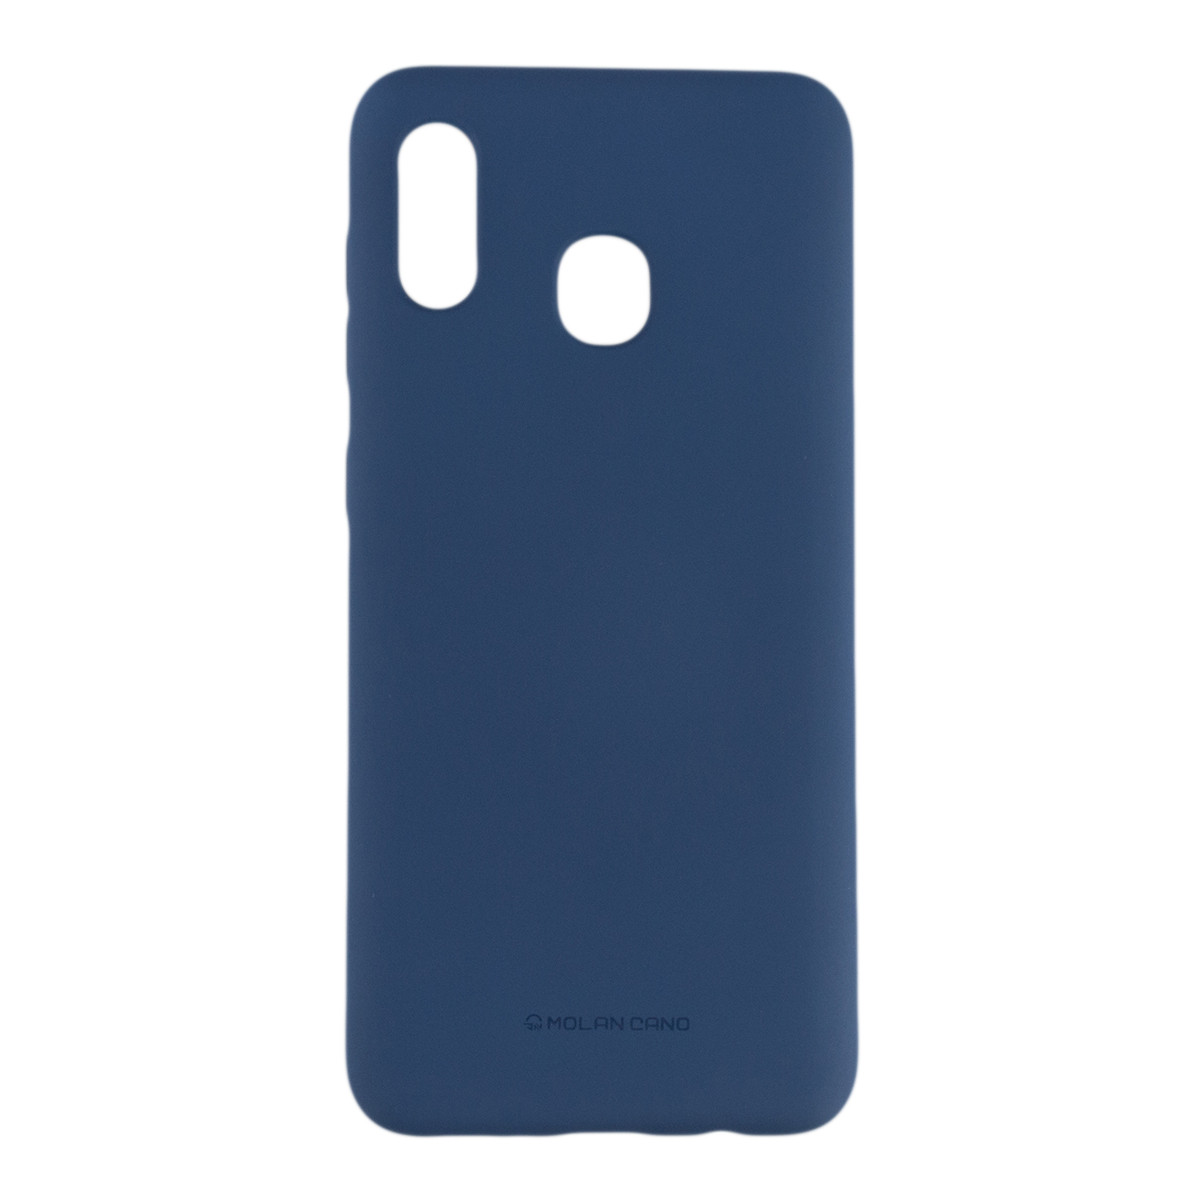 Оригінальний силіконовий чохол Molan Cano Jelly Case для Samsung Galaxy A20 (SM-A205) (синій)